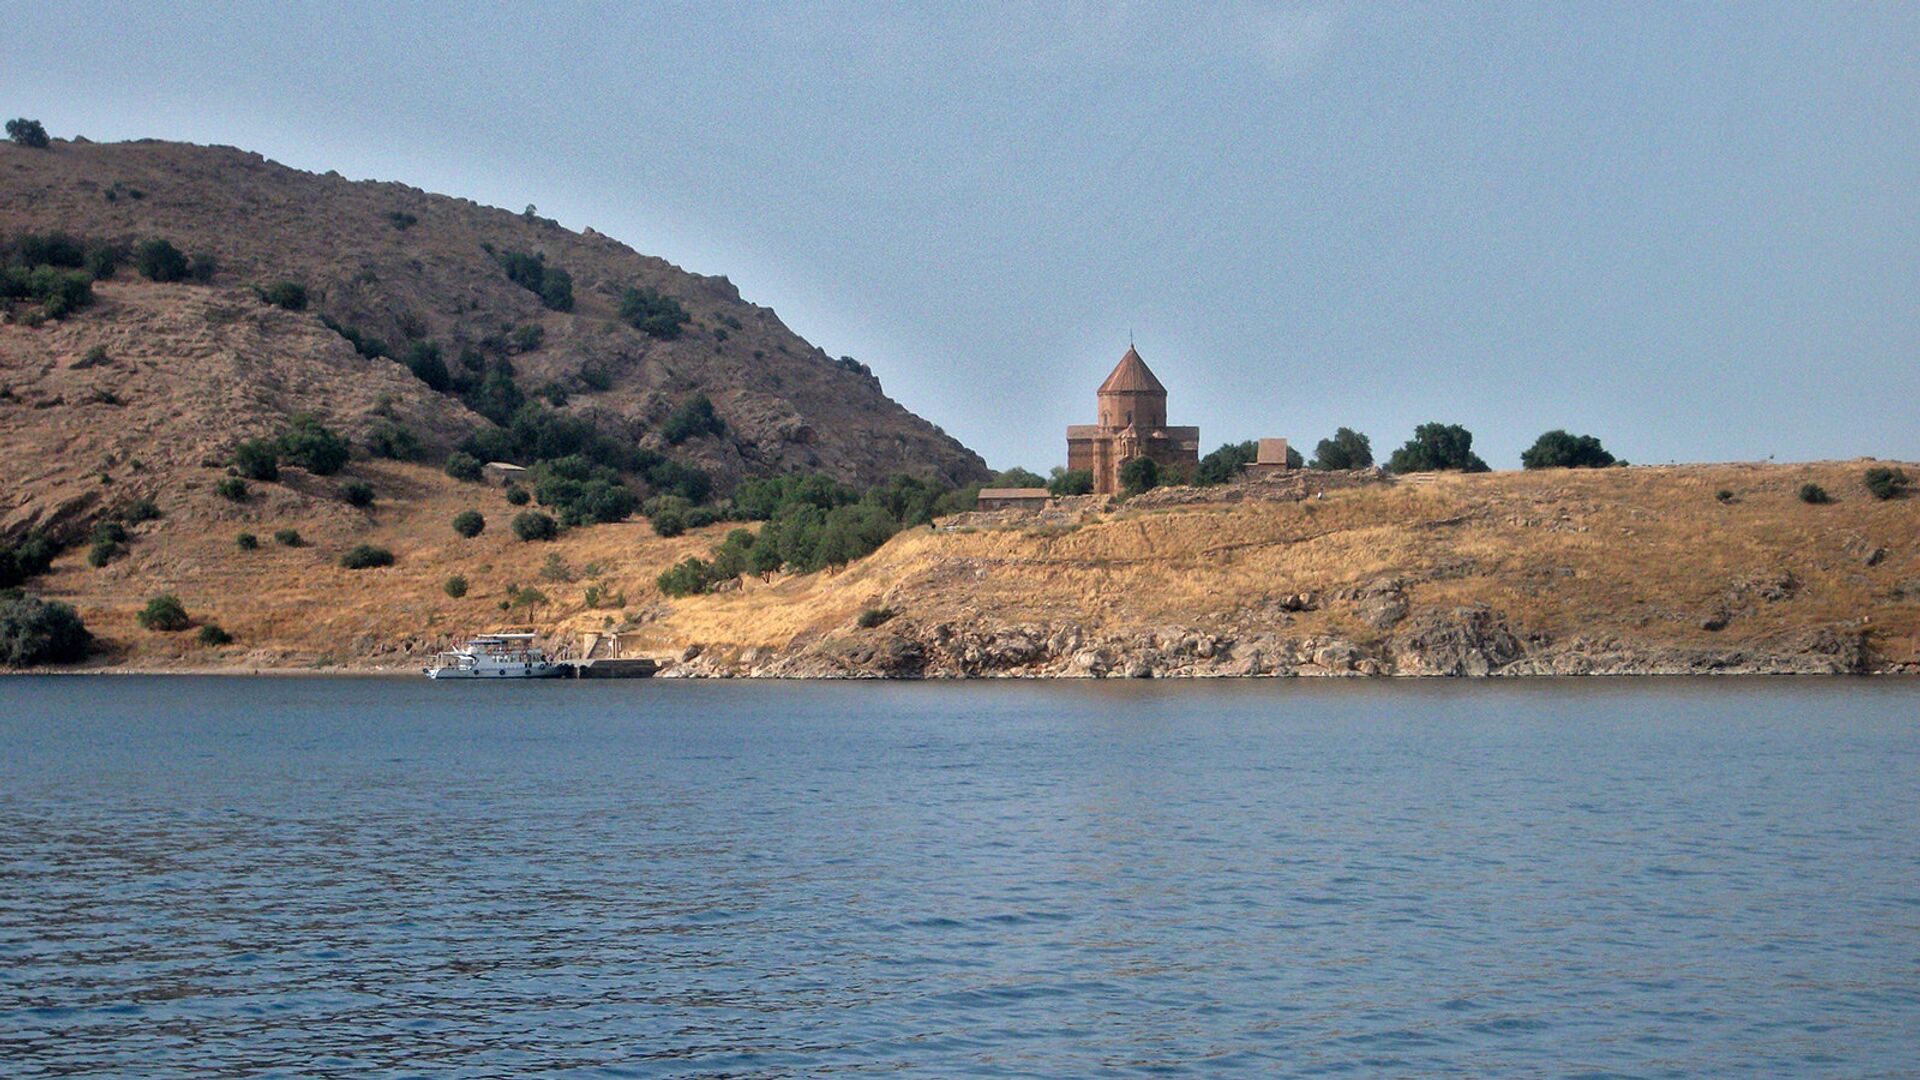 Остров Ахтамар, озеро Ван. Турция (Западная Армения) - Sputnik Արմենիա, 1920, 02.10.2021